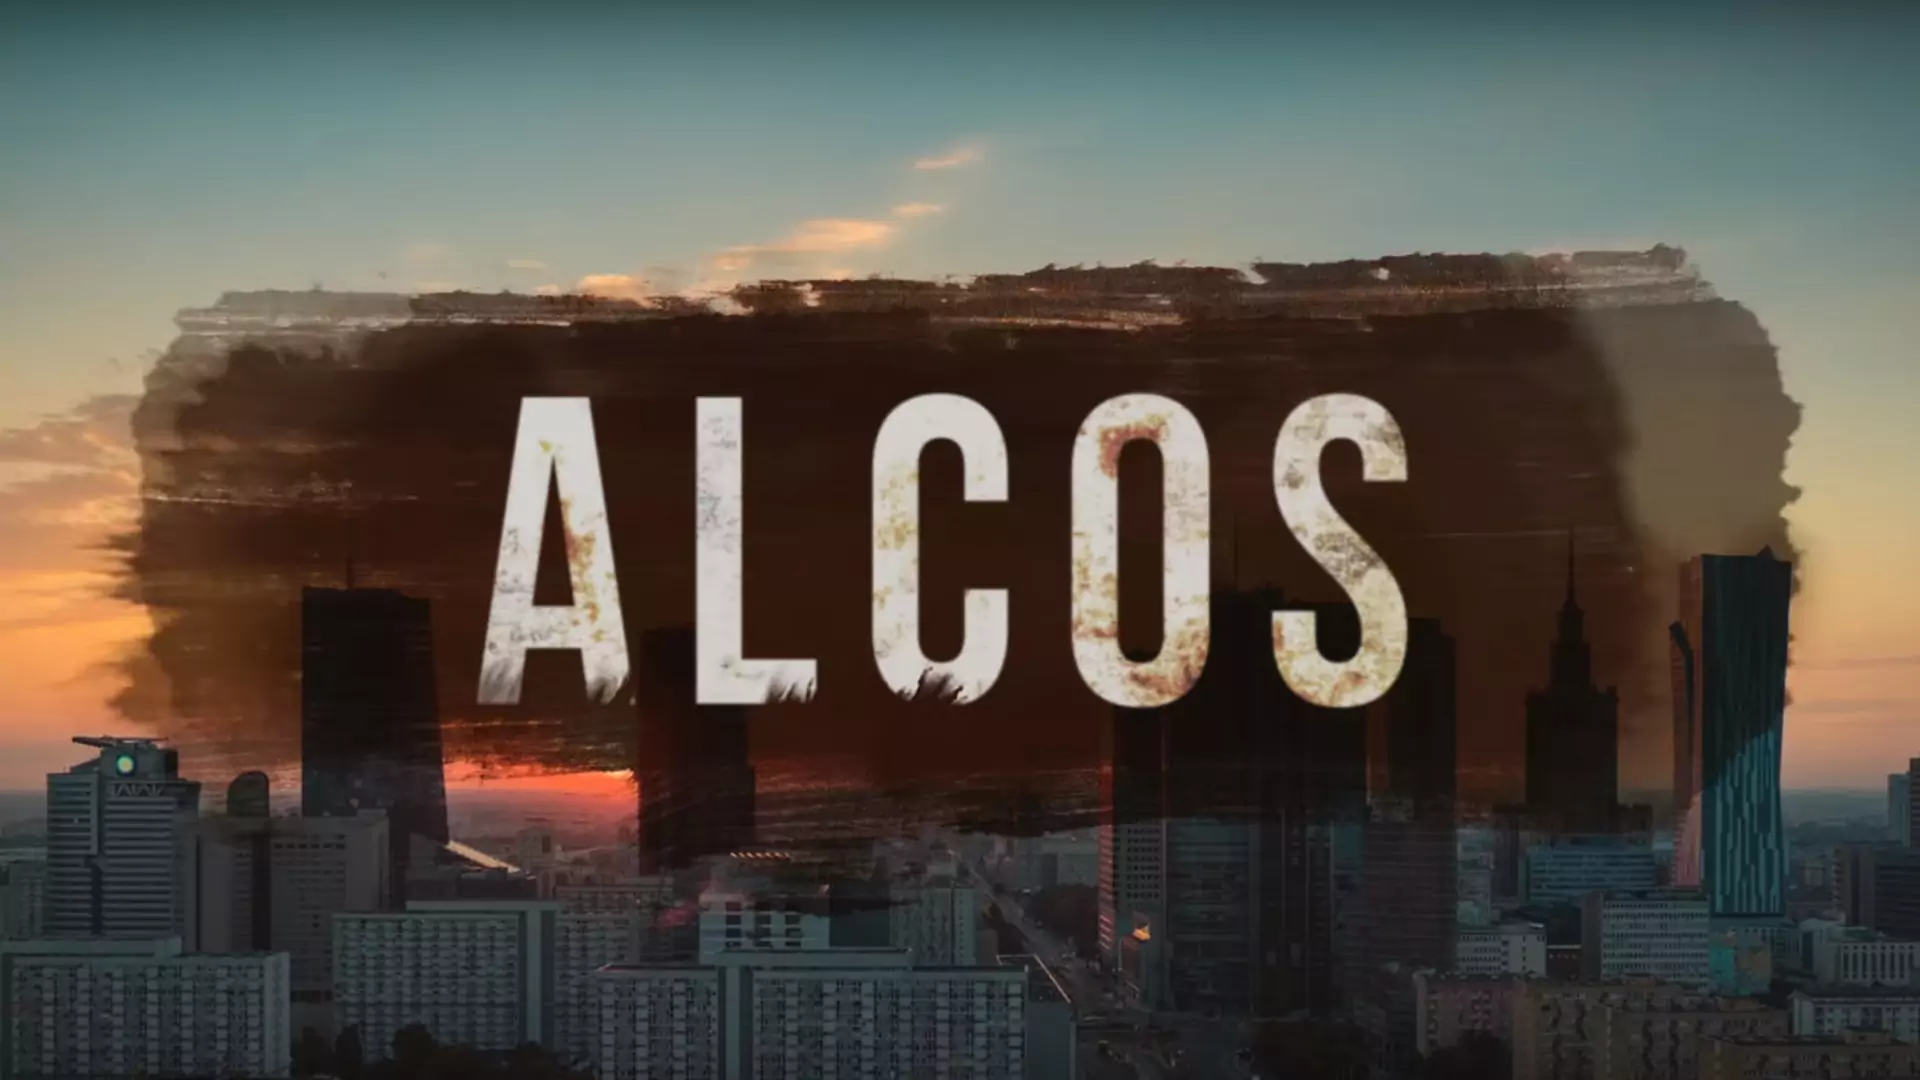 Jak wyglądaloby polskie "Narcos"? Zobacz "Alcos", krótki film o początkach polskiej mafii